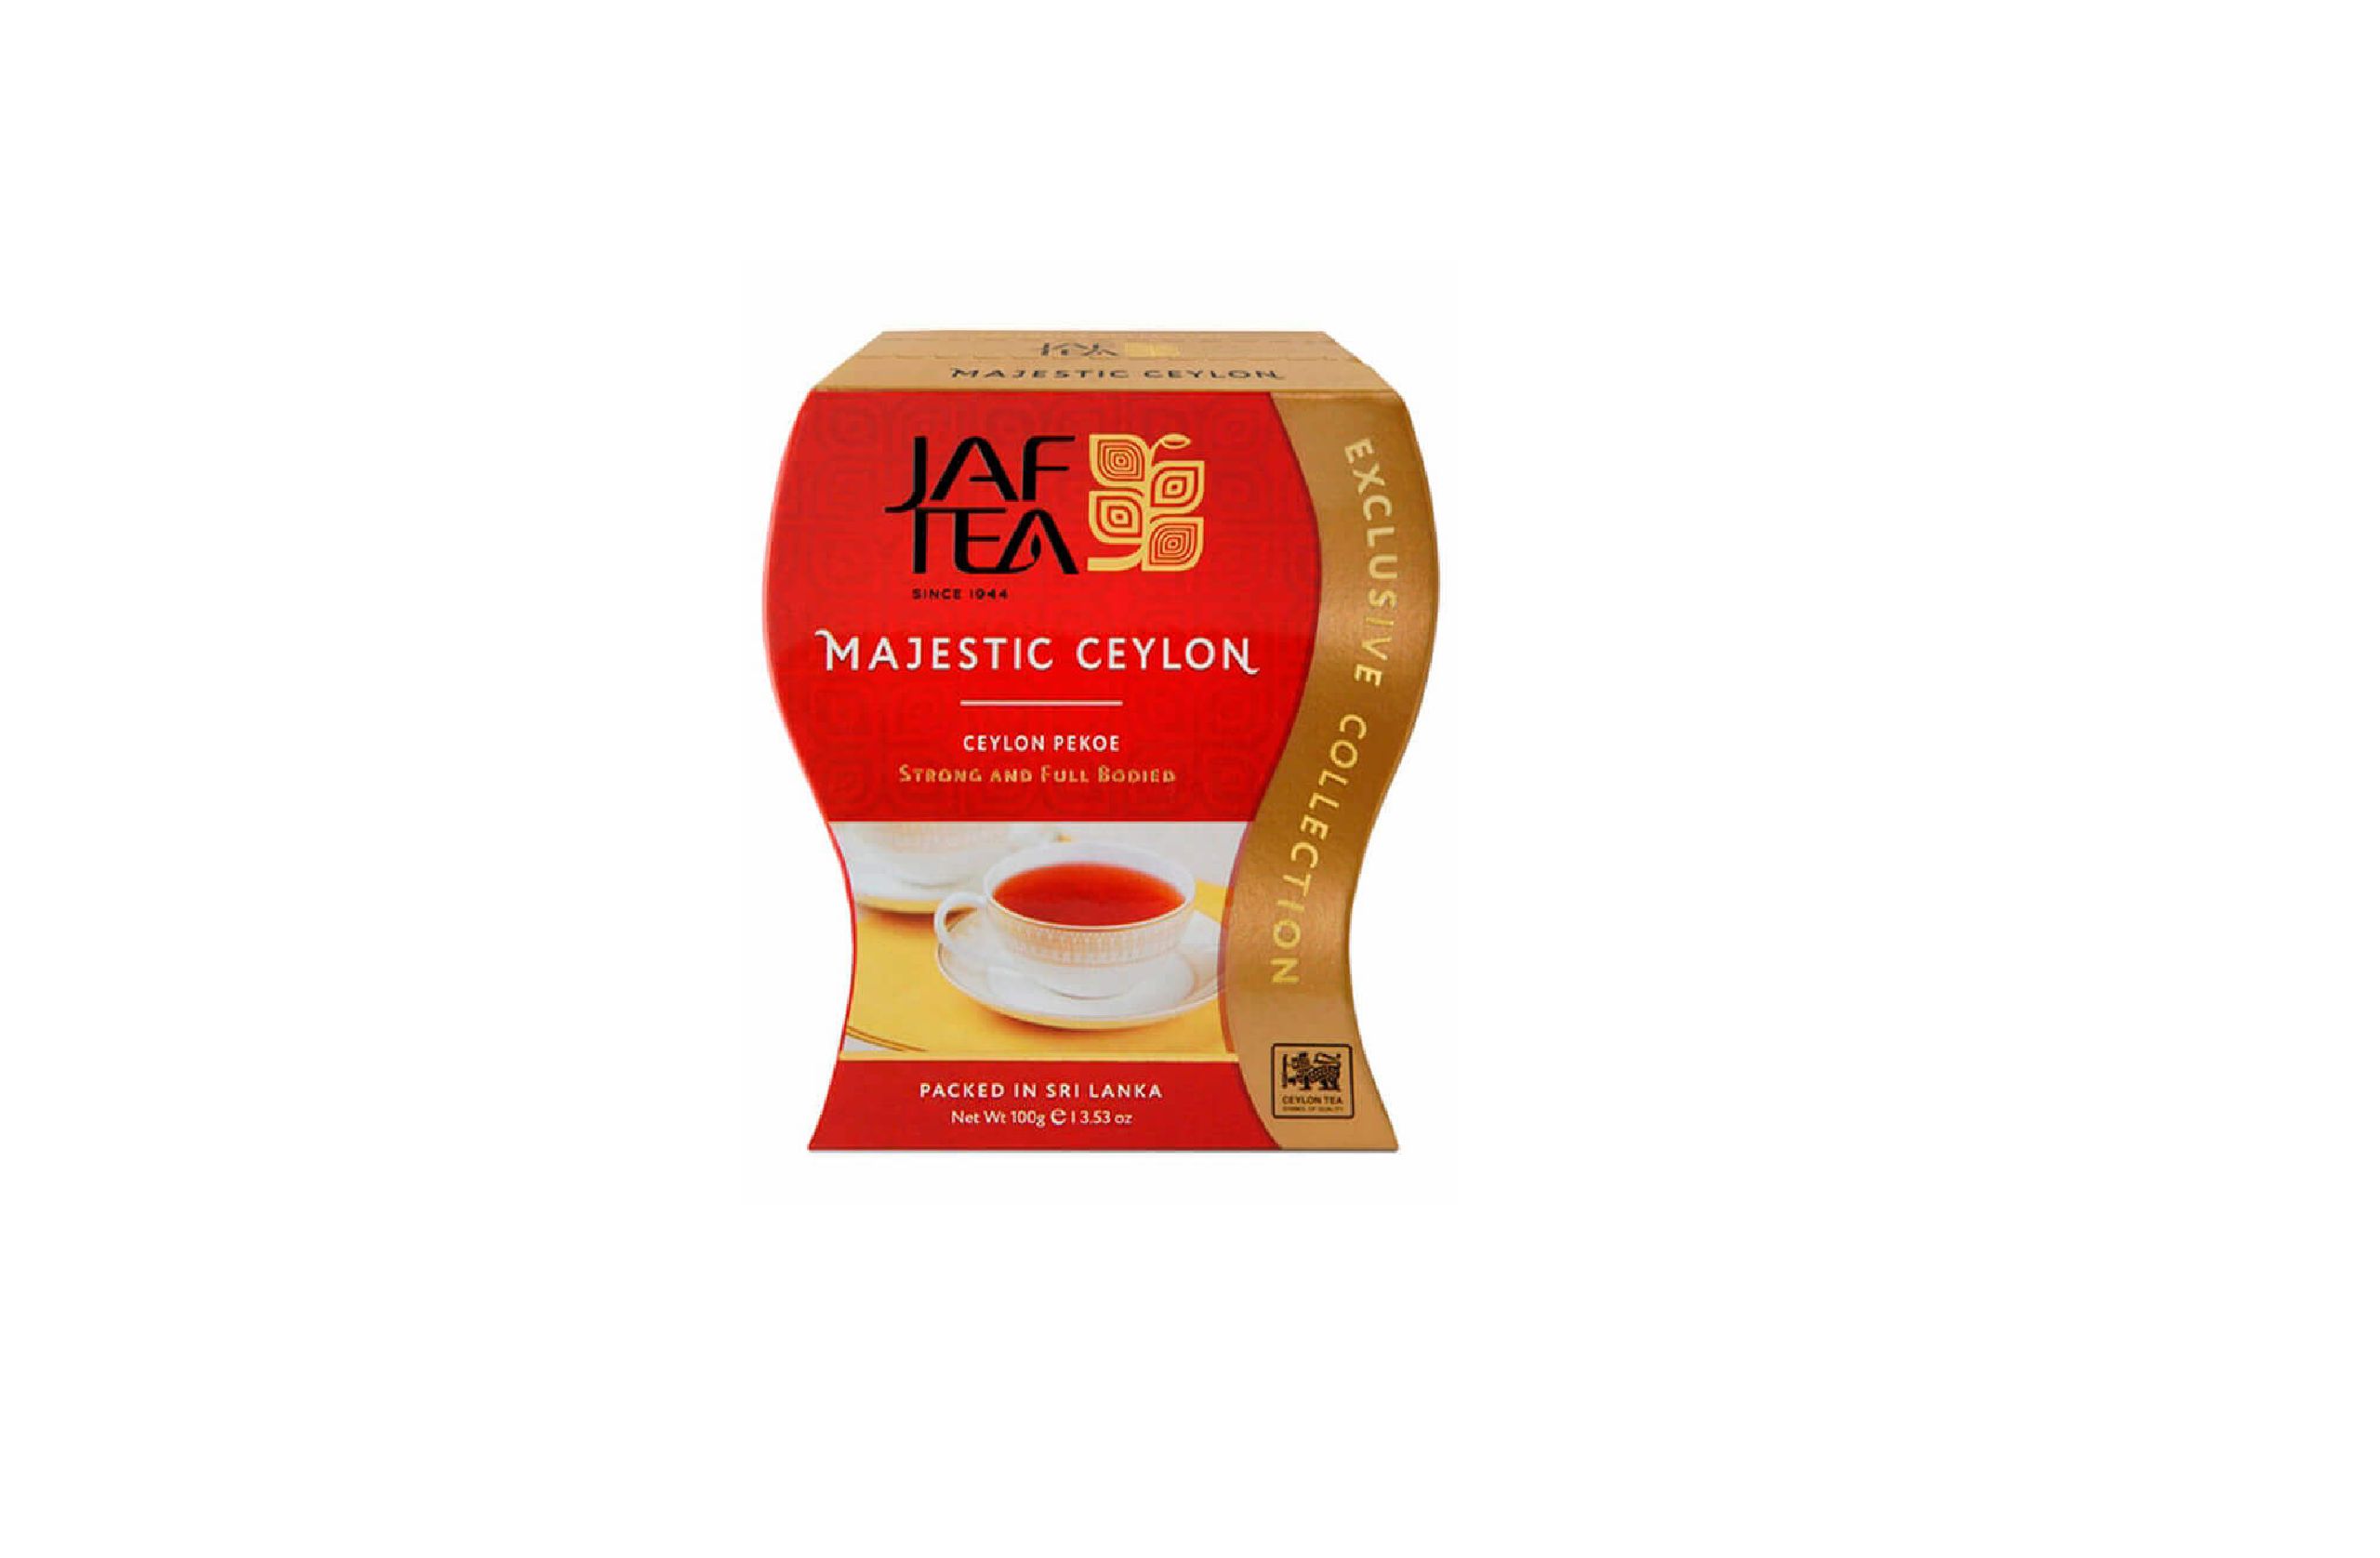 Купить чай пеко. Чай черный JAF Tea Exclusive collection Majestic Ceylon. Чай Монзил "Сeylon Black ornament" черный крупнолистовой ж/б 200 г.